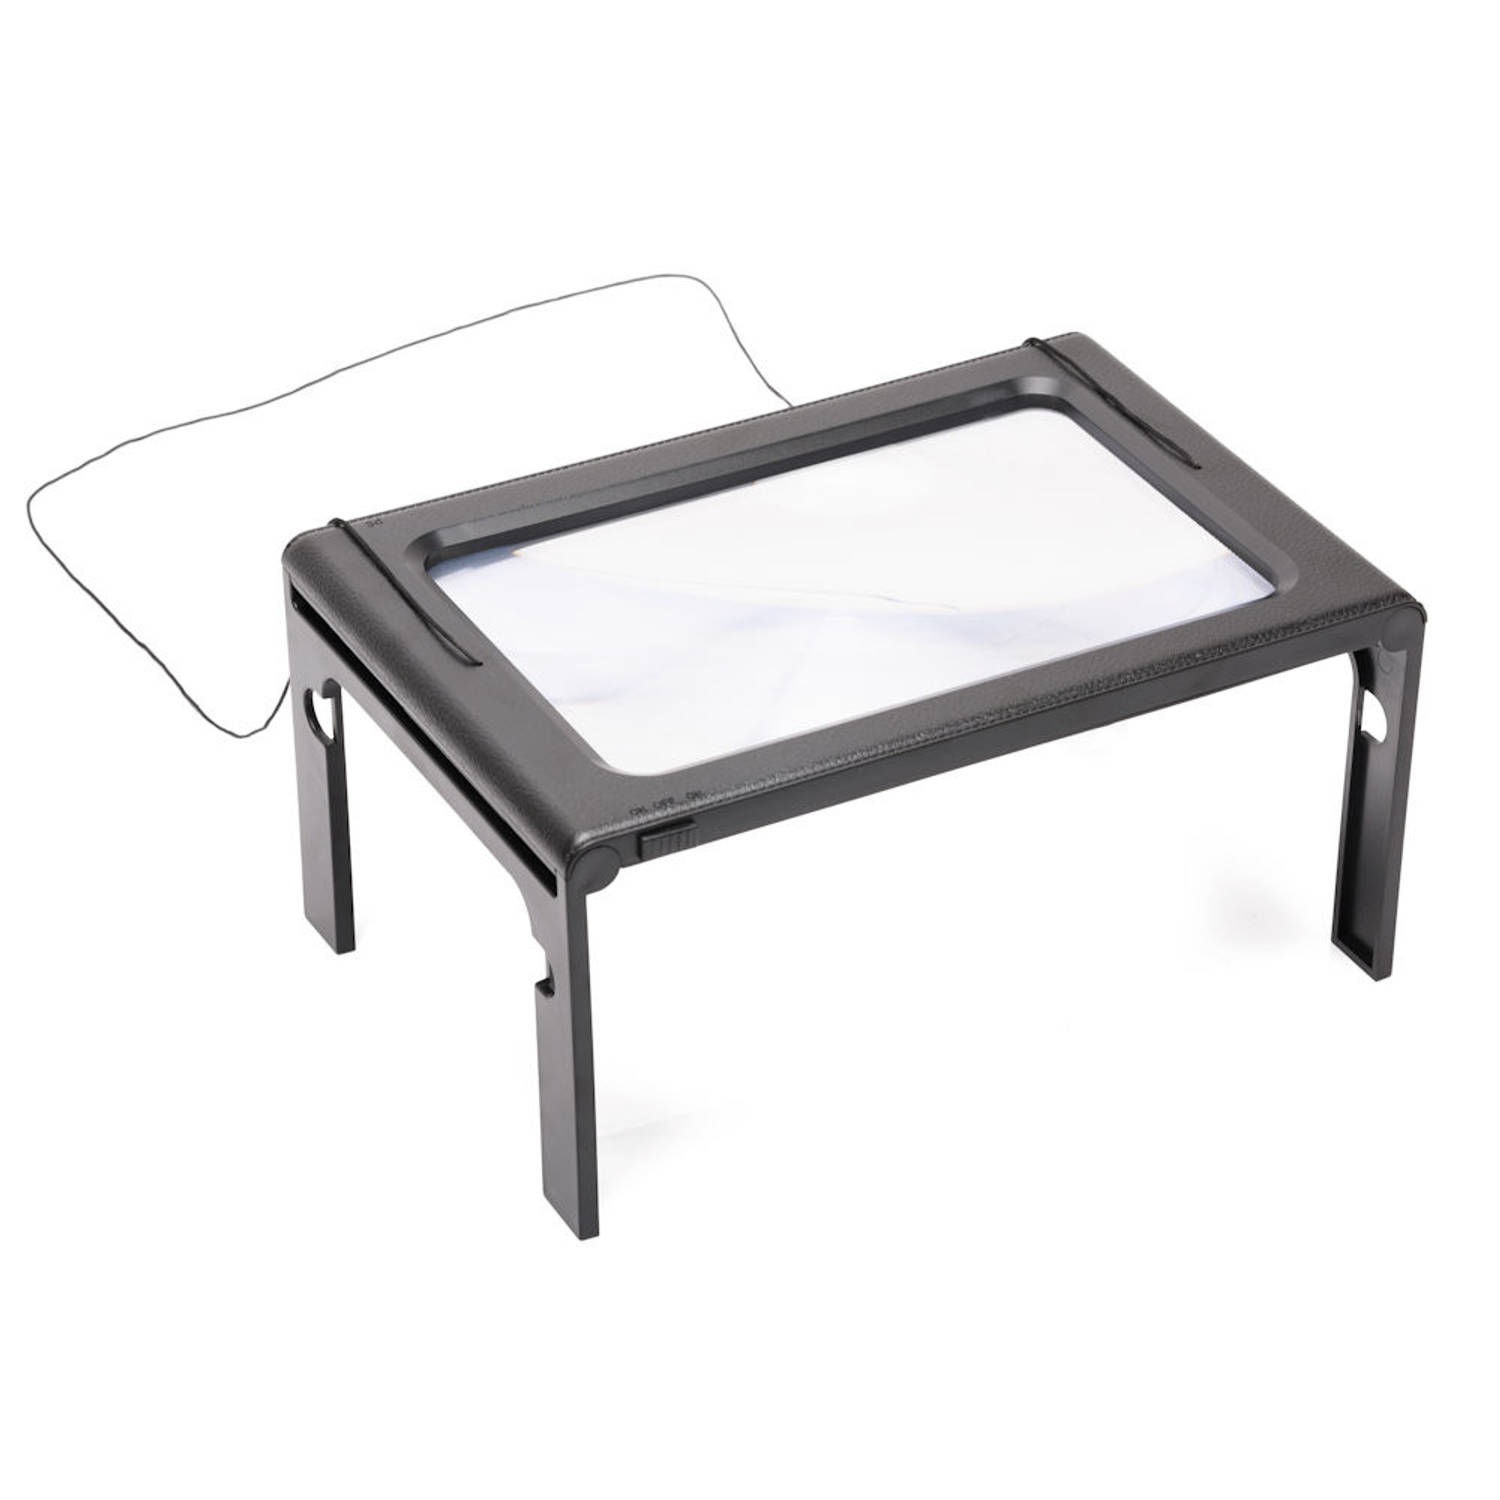 Helderheid Absorberend Zonnig Tafel Loep - Vergrootglas met LED verlichting - Loep 2.5x - | Blokker